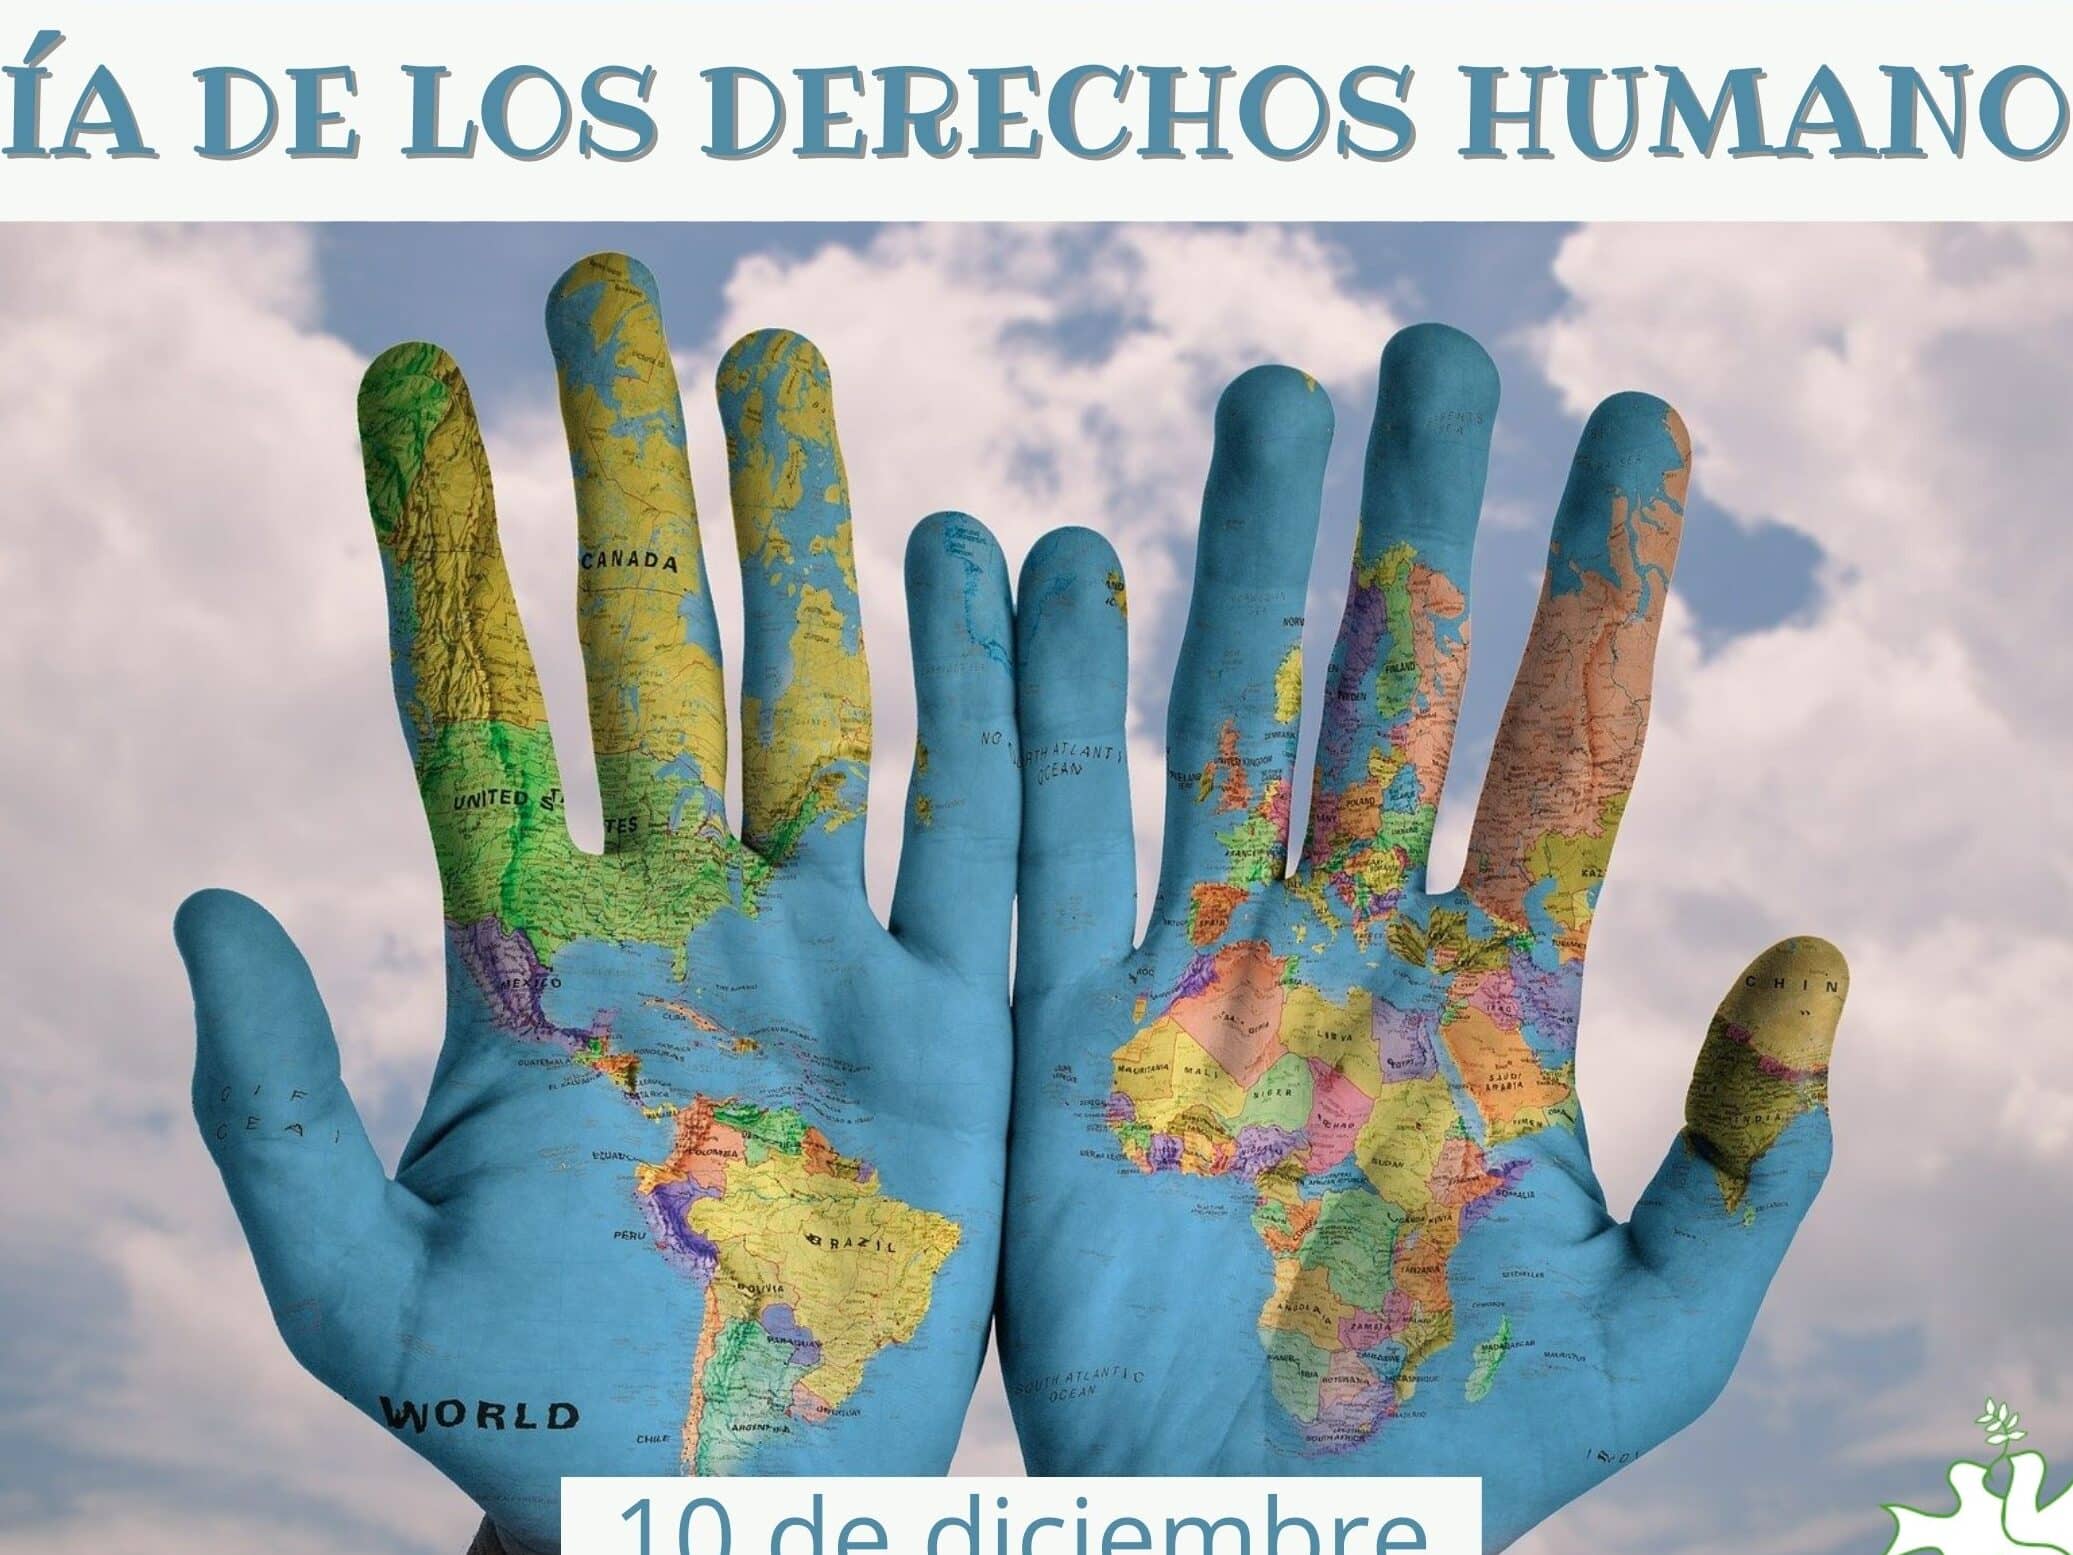 dia de los derechos humanos el dia 10 de diciembre